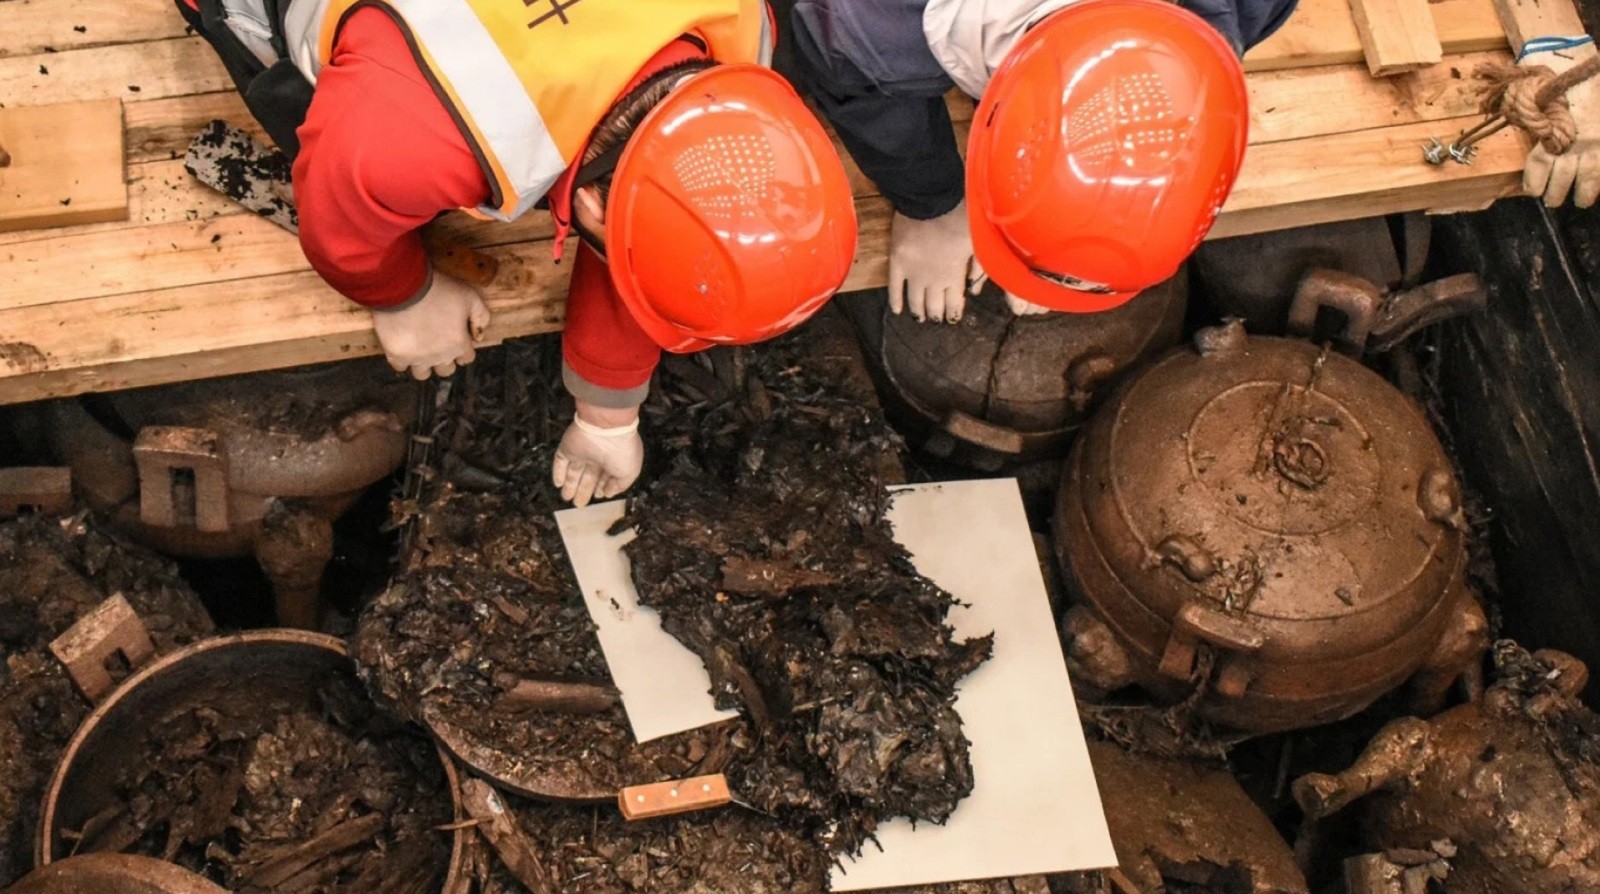 Chiński grób sprzed 2200 lat kluczem do rozwiązania wielkiej zagadki. Archeolodzy na tropie legendarnego władcy